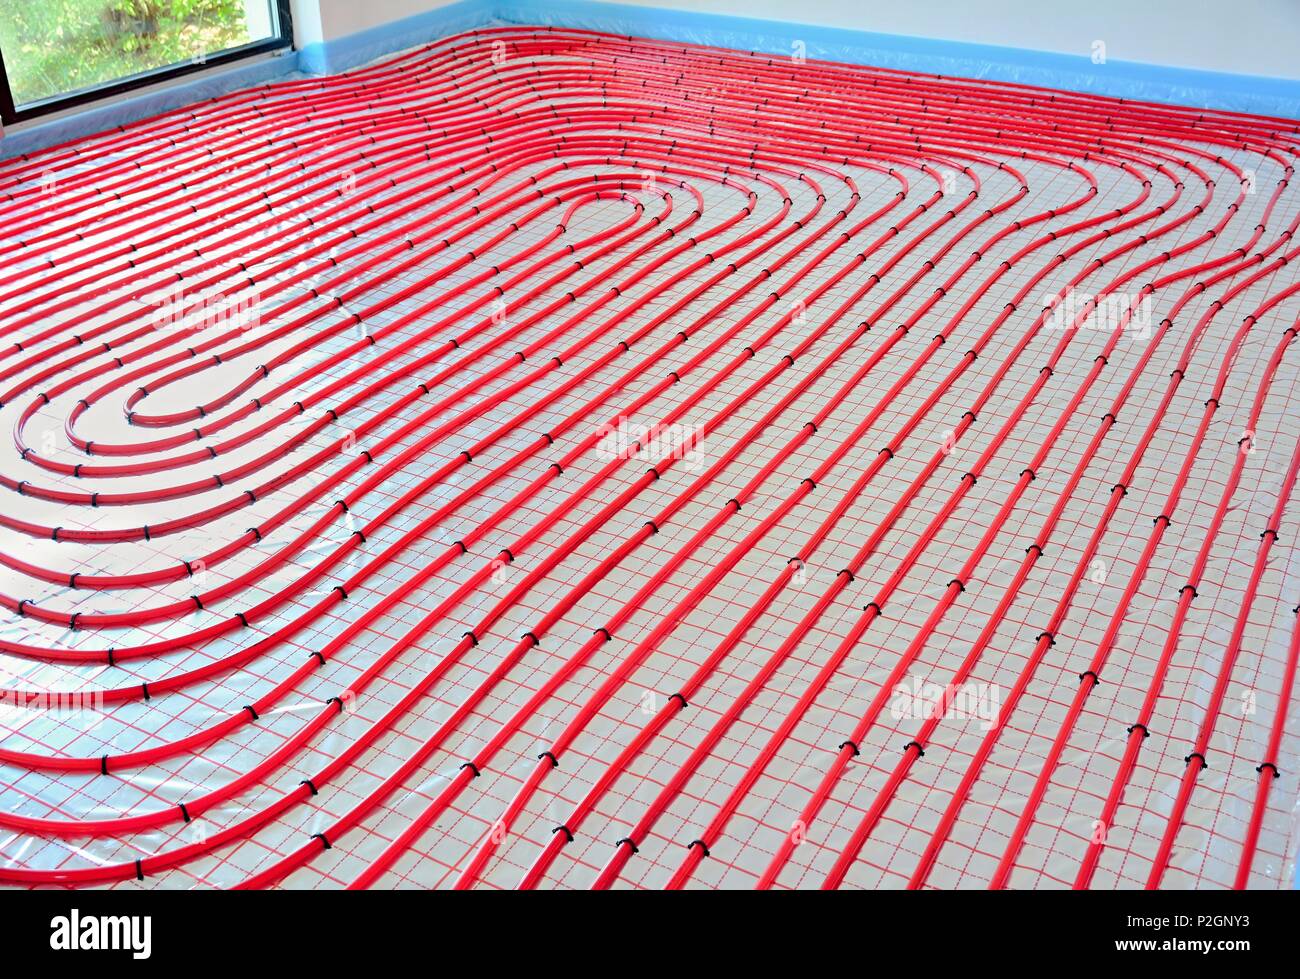 Wasser Fussbodenheizung Rohre auf dem silber-reflektierende Folie im  Wohnungsbau Stockfotografie - Alamy